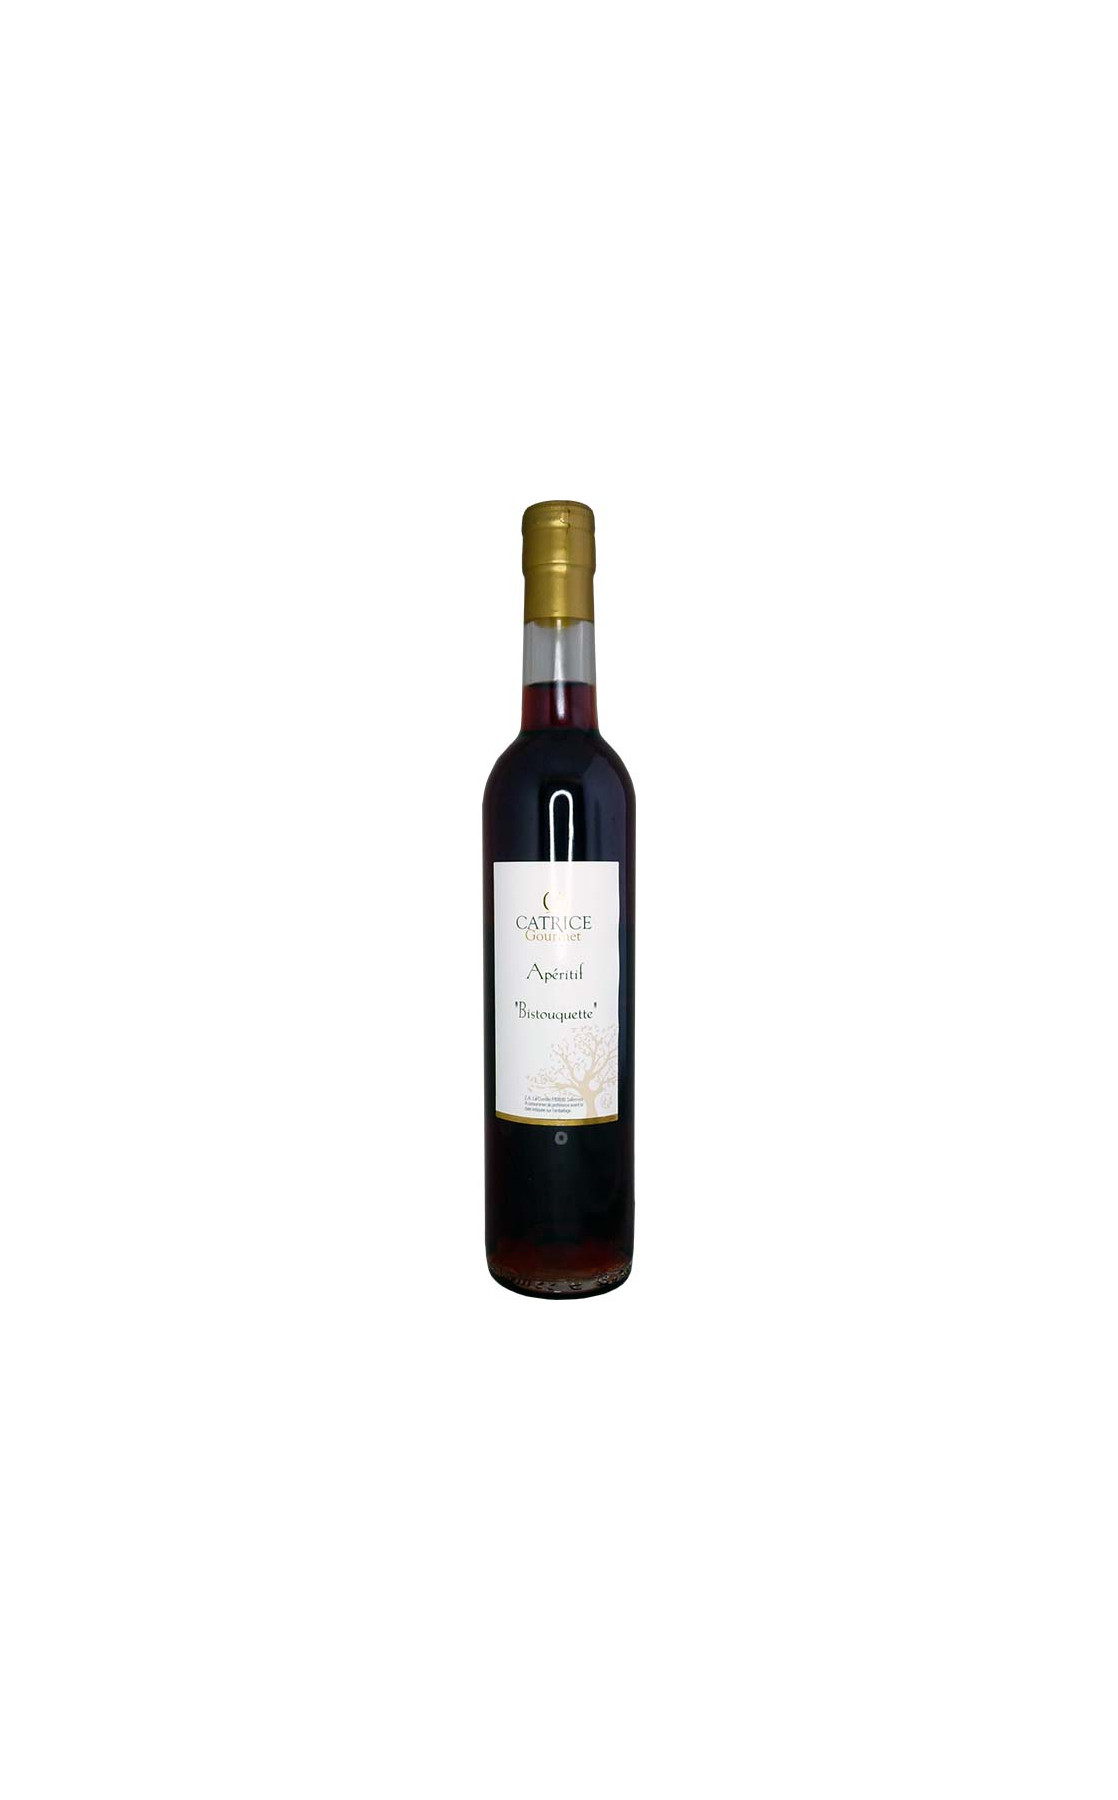 Vin apéritif bistouquette 50cl - 12%Vol